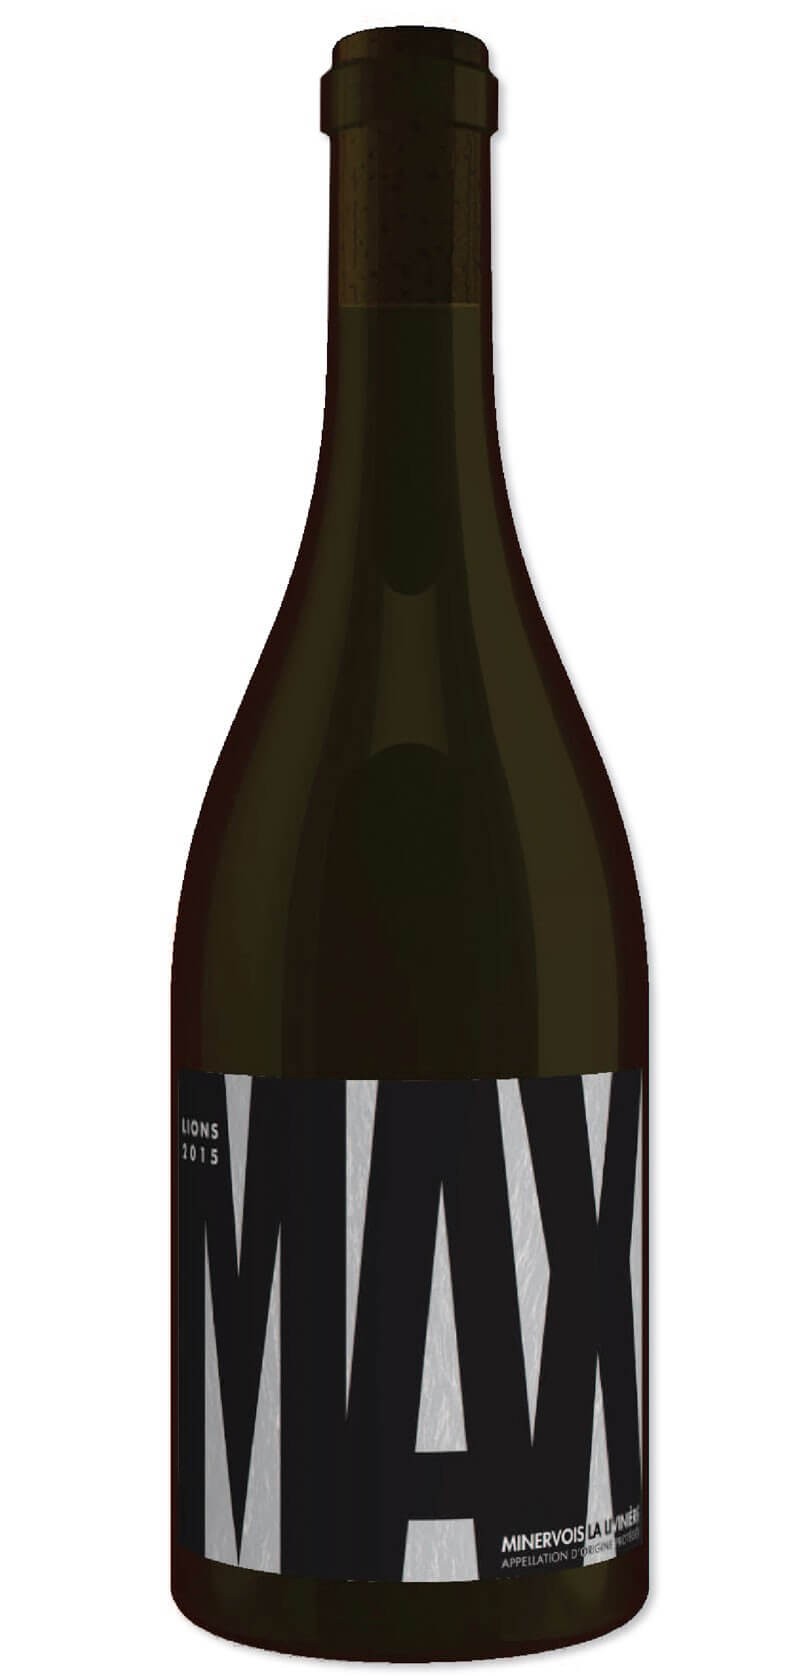 Max Lions - Cuvée Max Minervois La Livinière - Vin rouge 